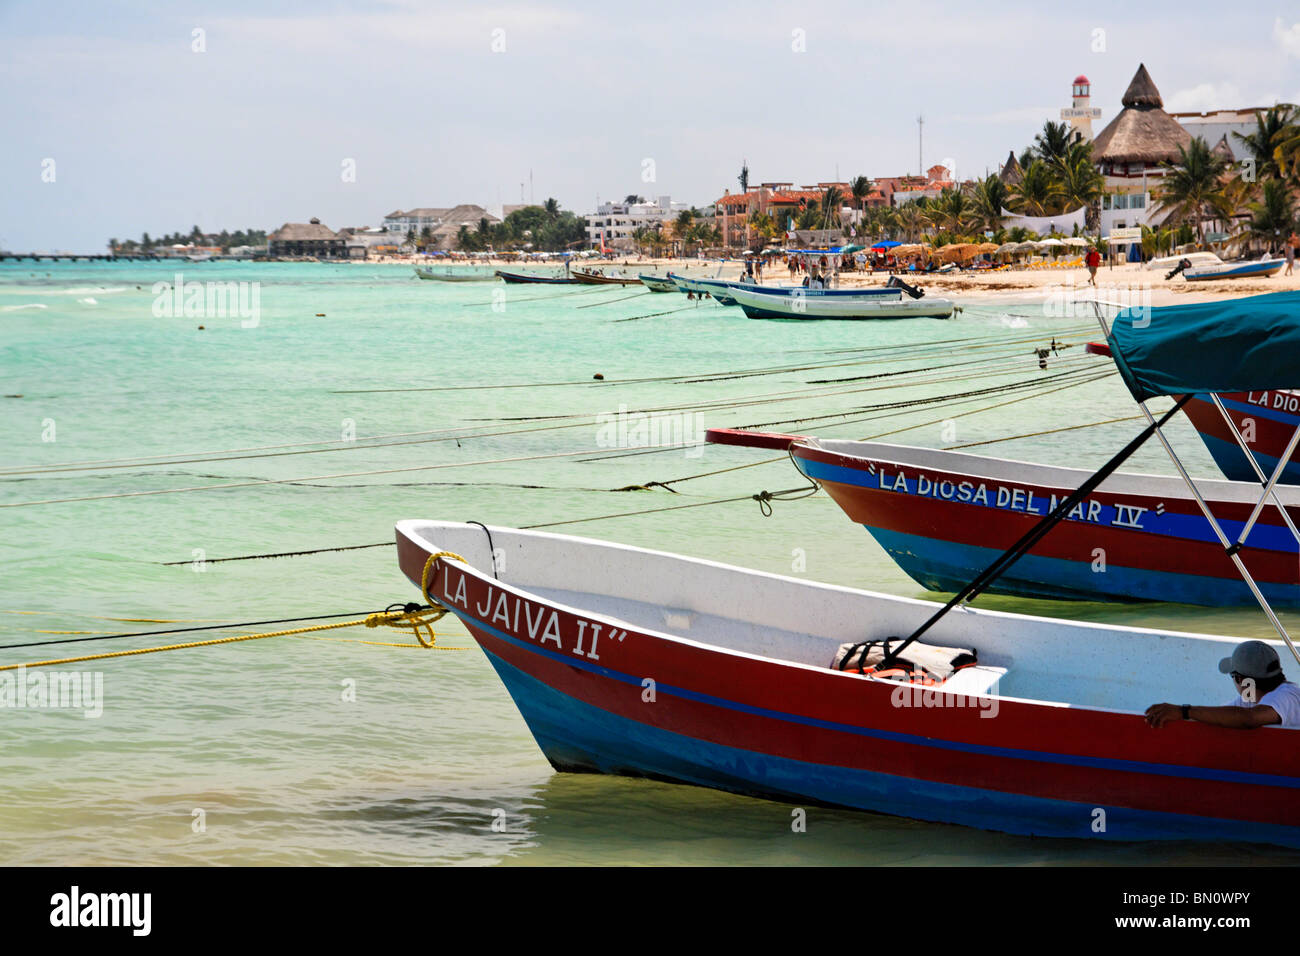 Fishing Boats Anchored on a Beach, Playa Del Carmen, Mexico Stock Photo